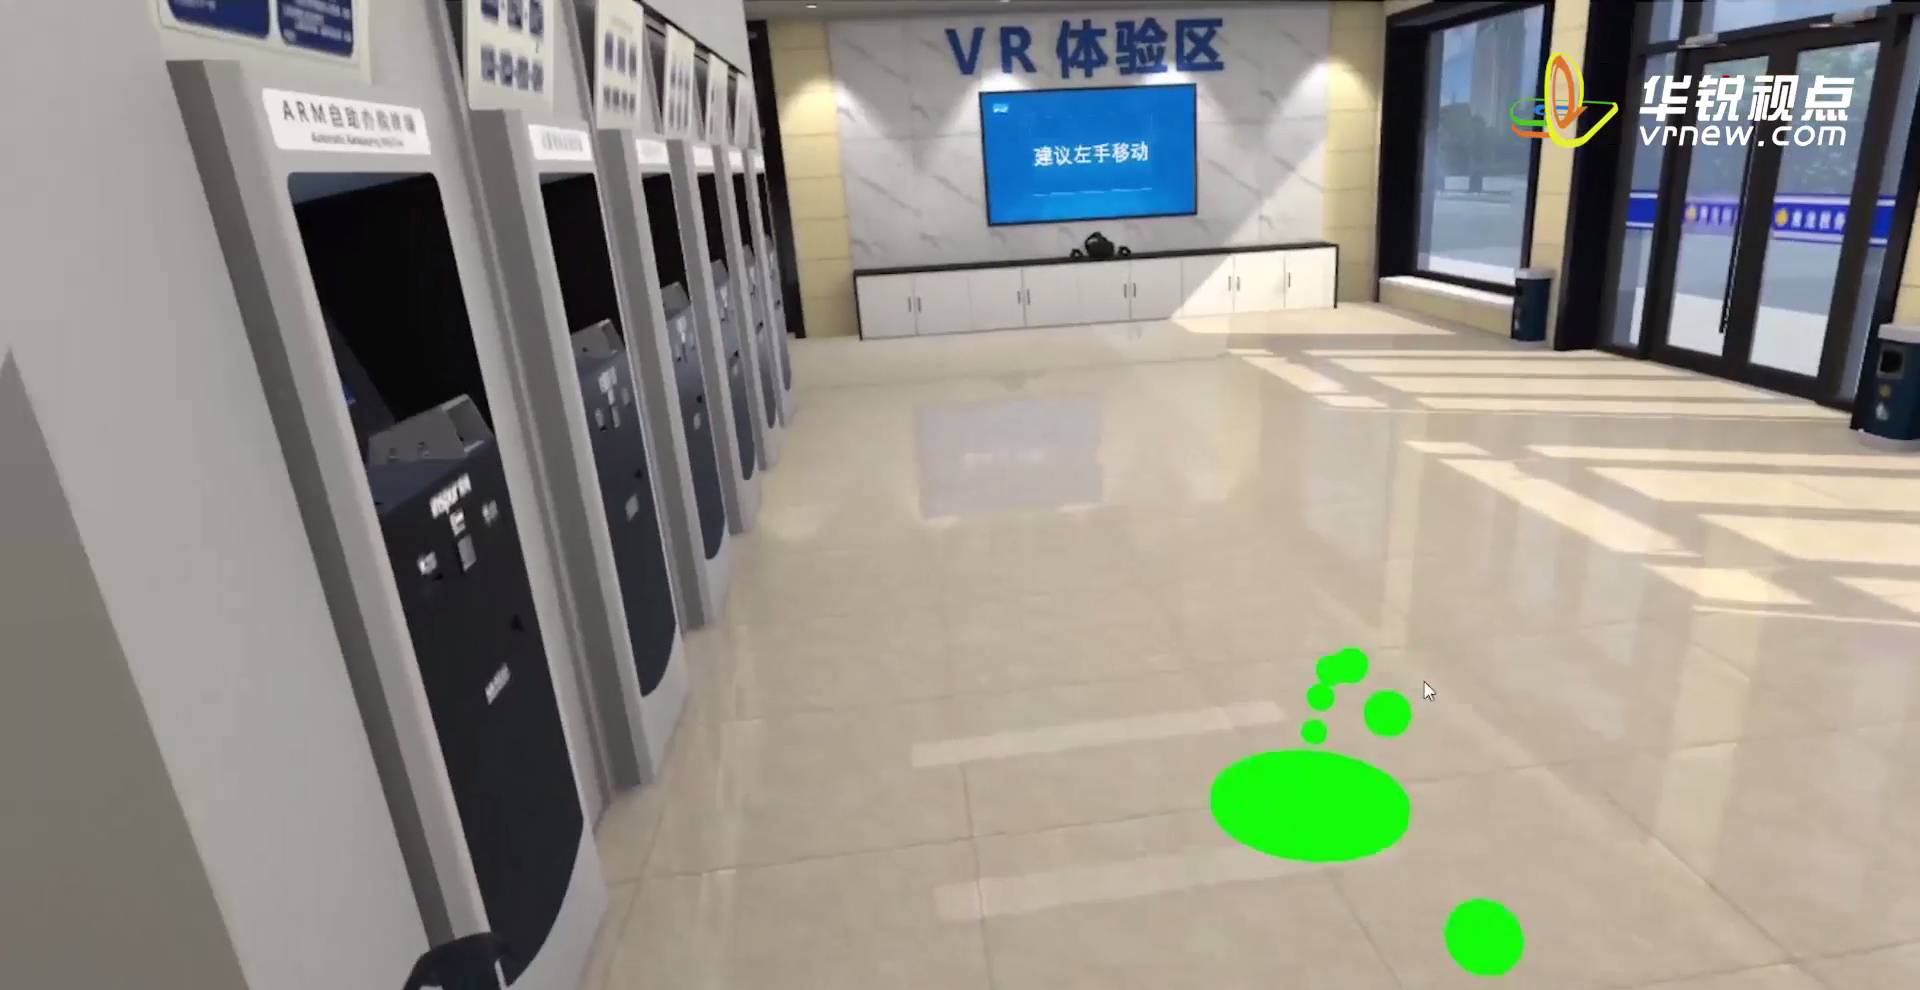 税务办理VR虚拟交互体验